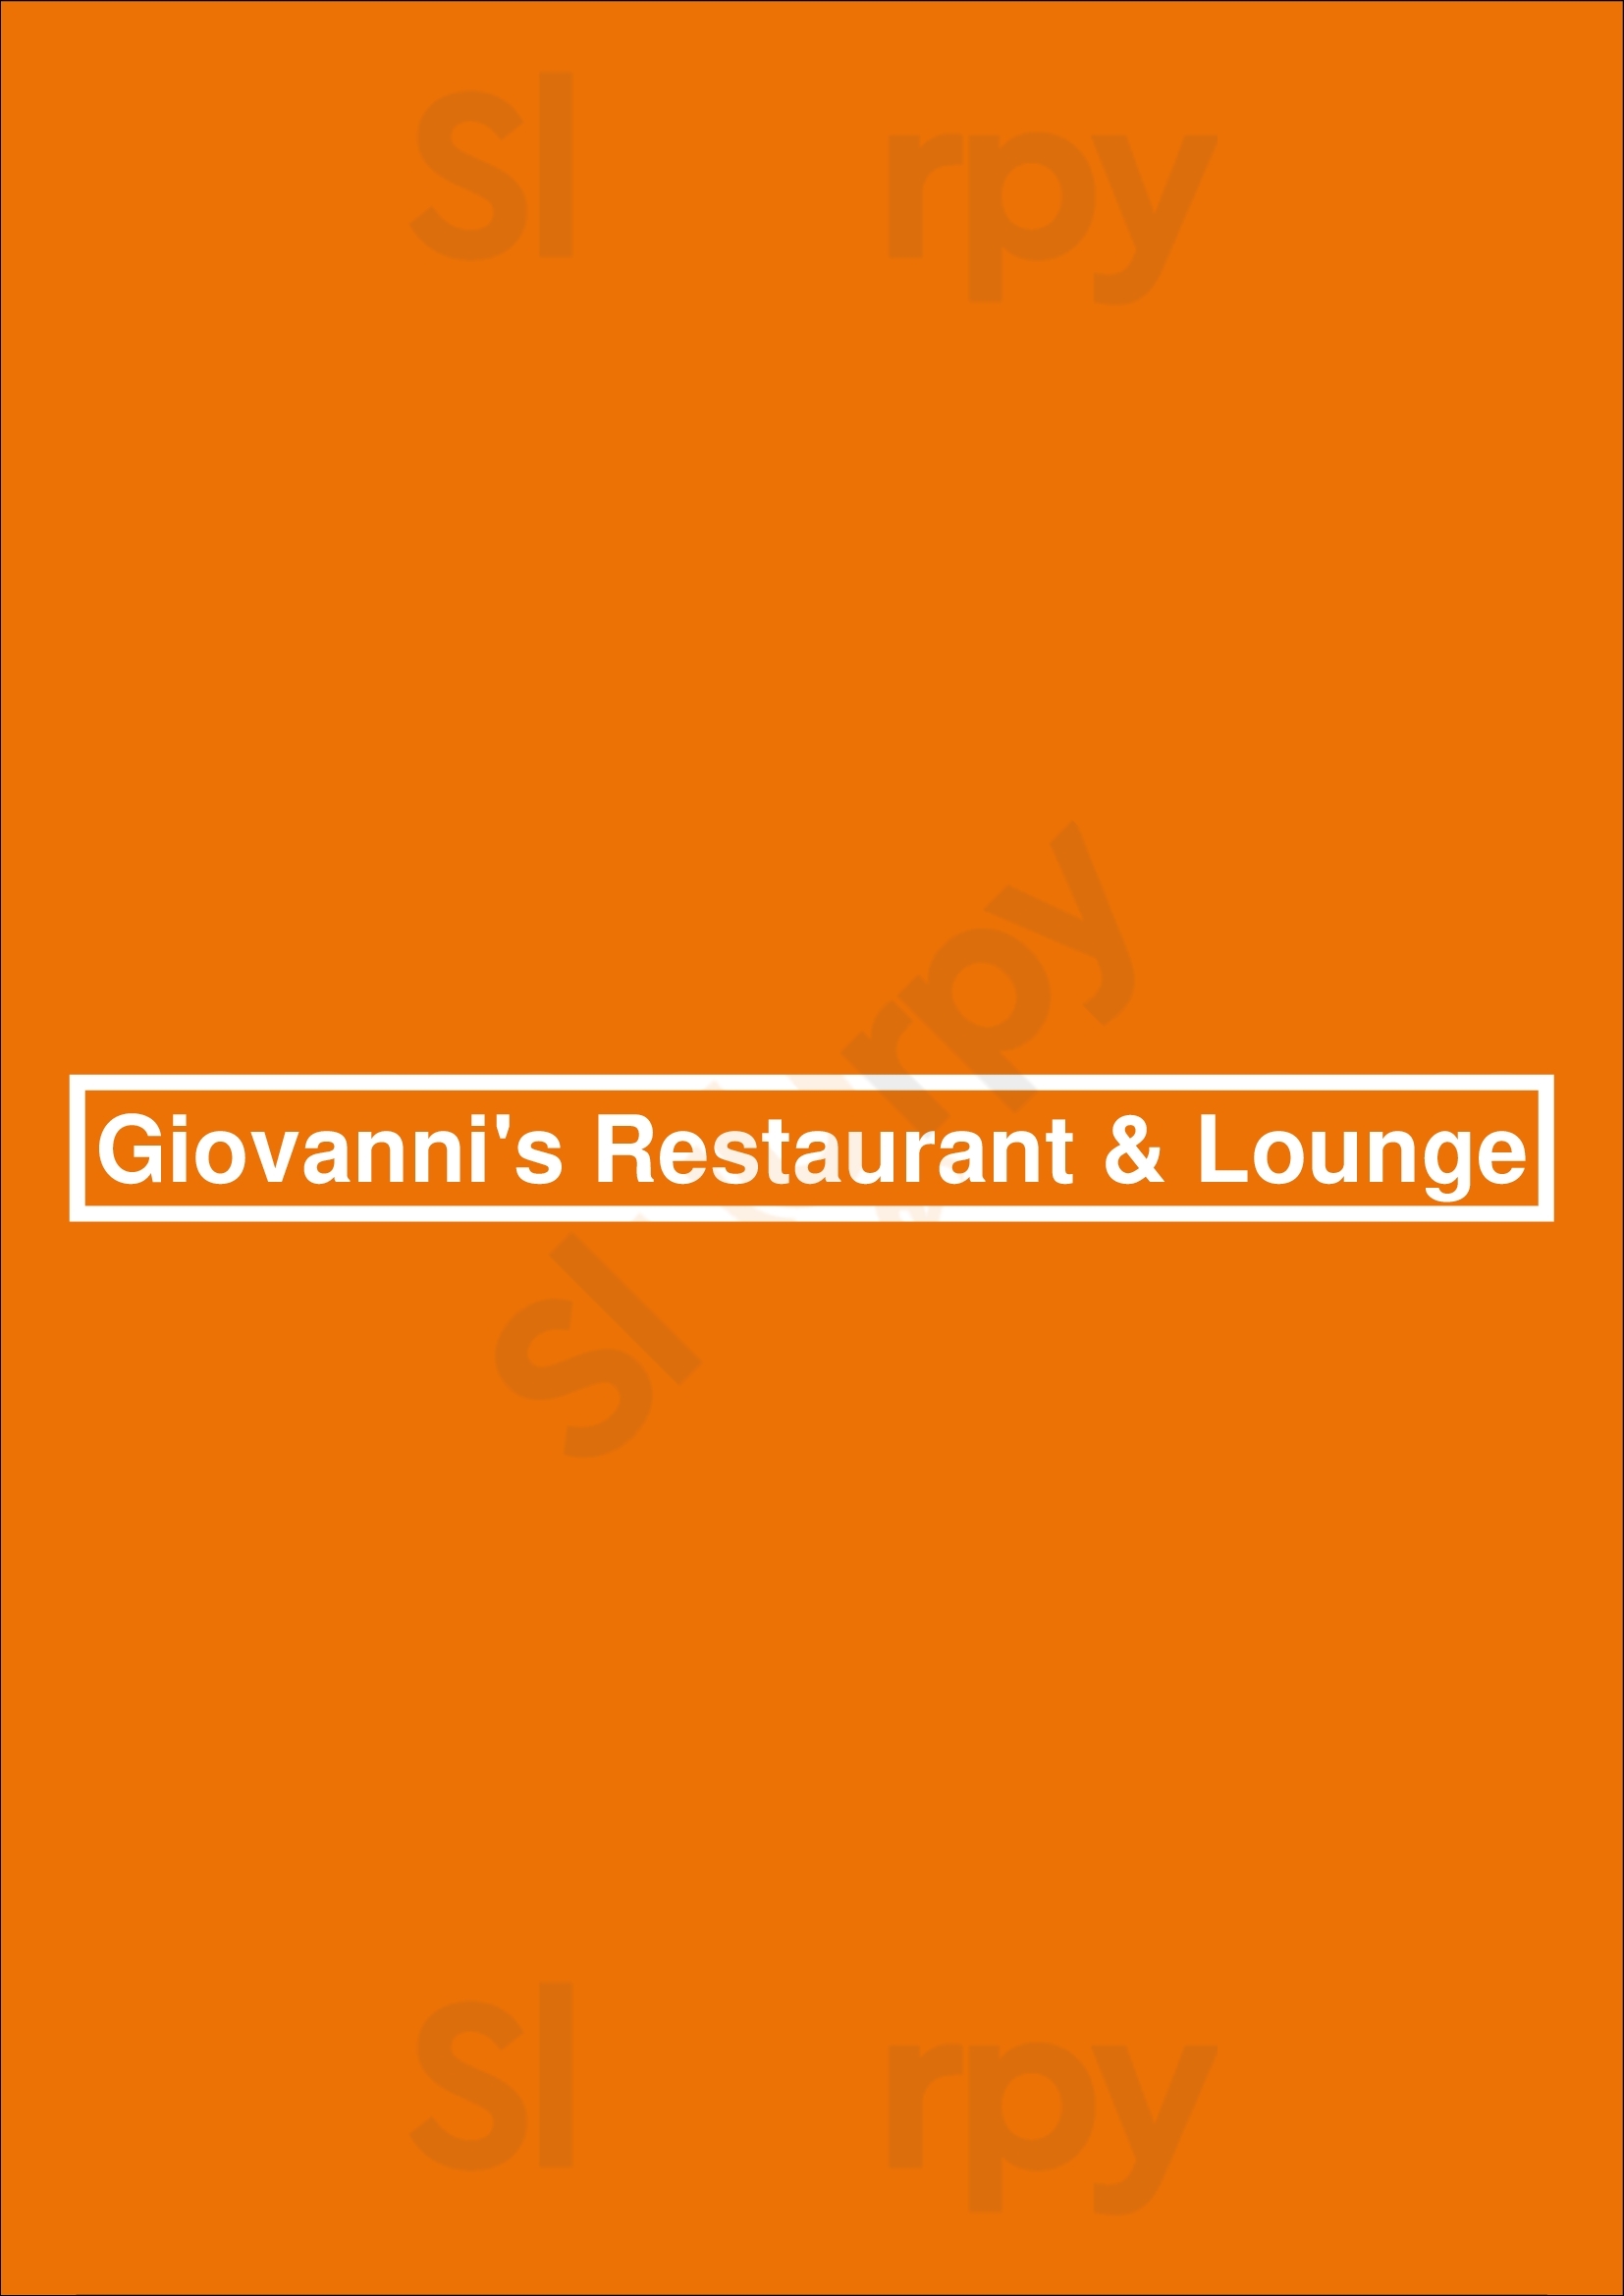 Giovanni's Restaurant & Lounge Ottawa Menu - 1